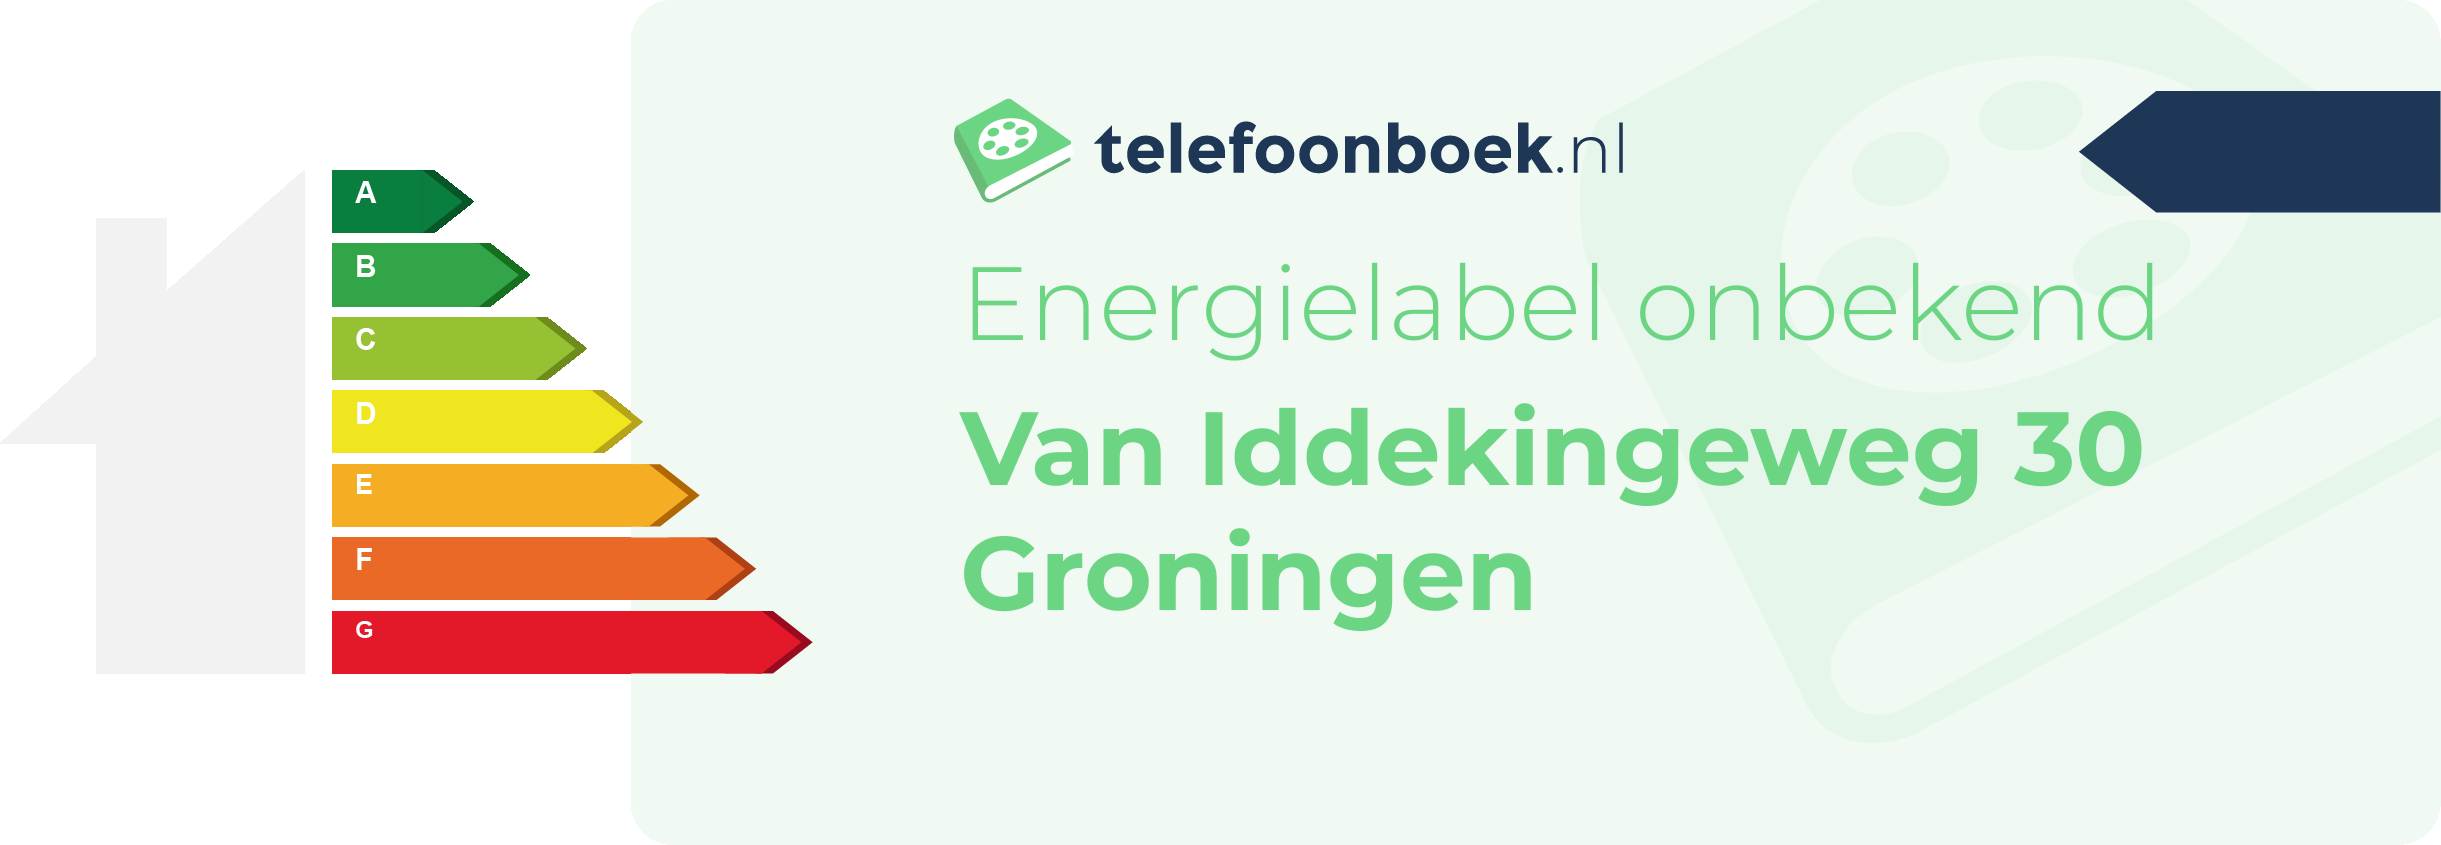 Energielabel Van Iddekingeweg 30 Groningen